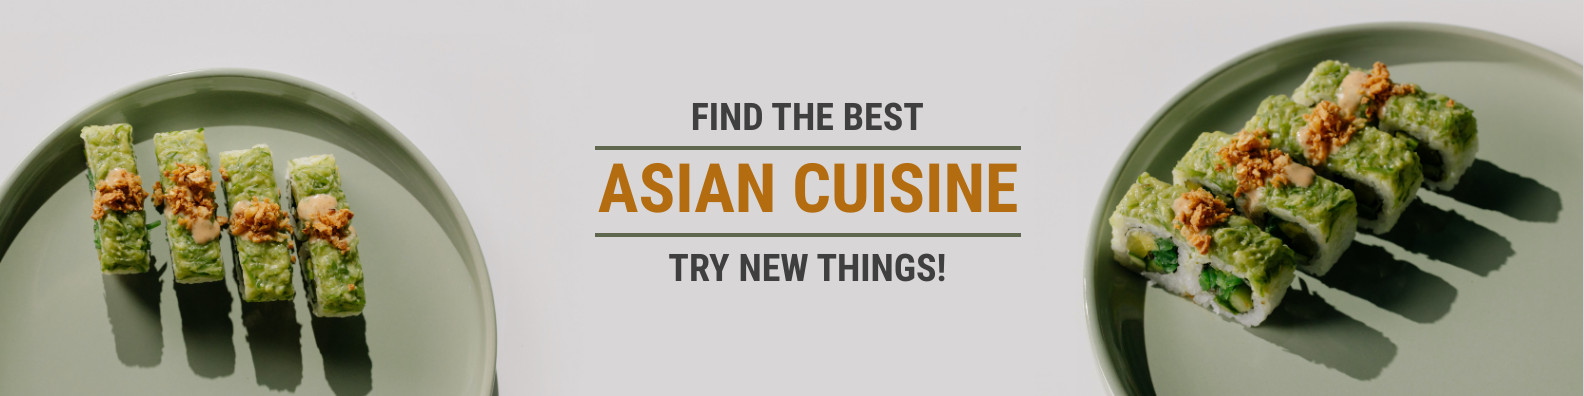 The Best Asian Cuisine Linkedin Profile BG